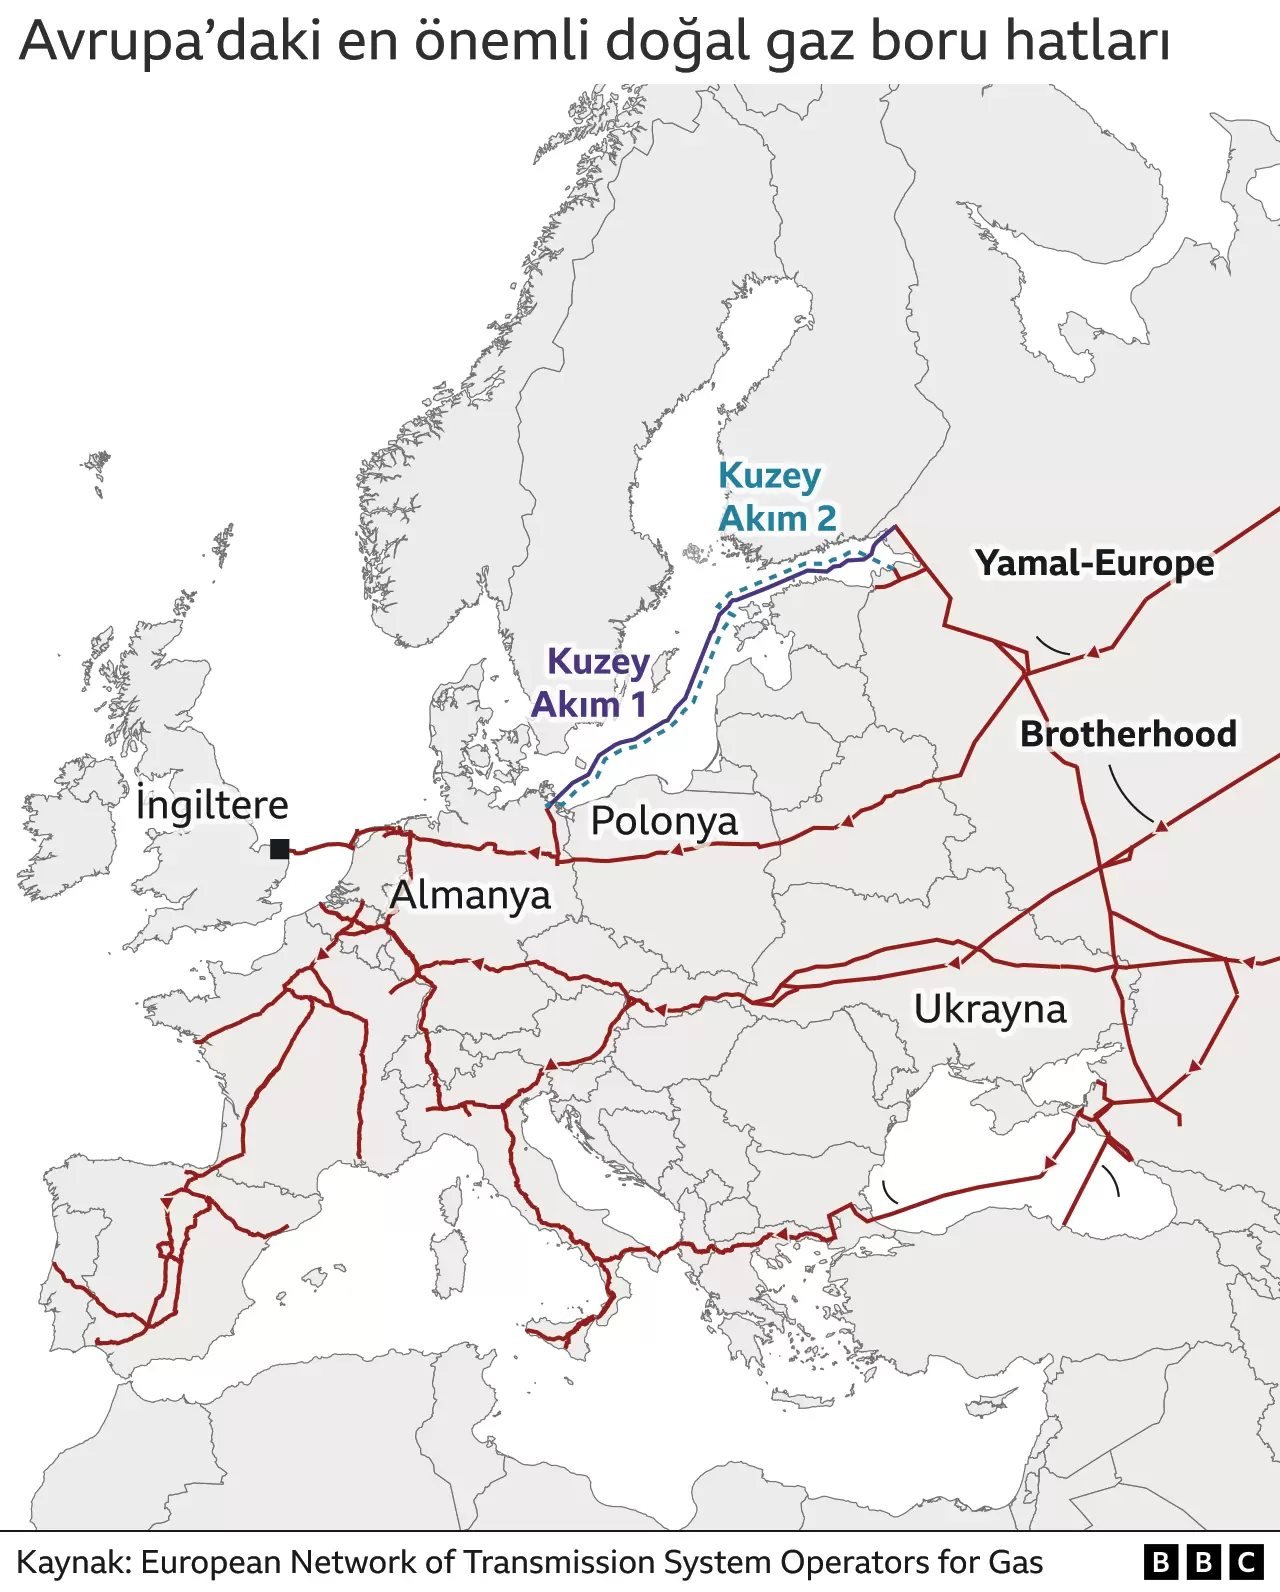 Avrupa'daki önemli boru hatlarını gösteren harita.